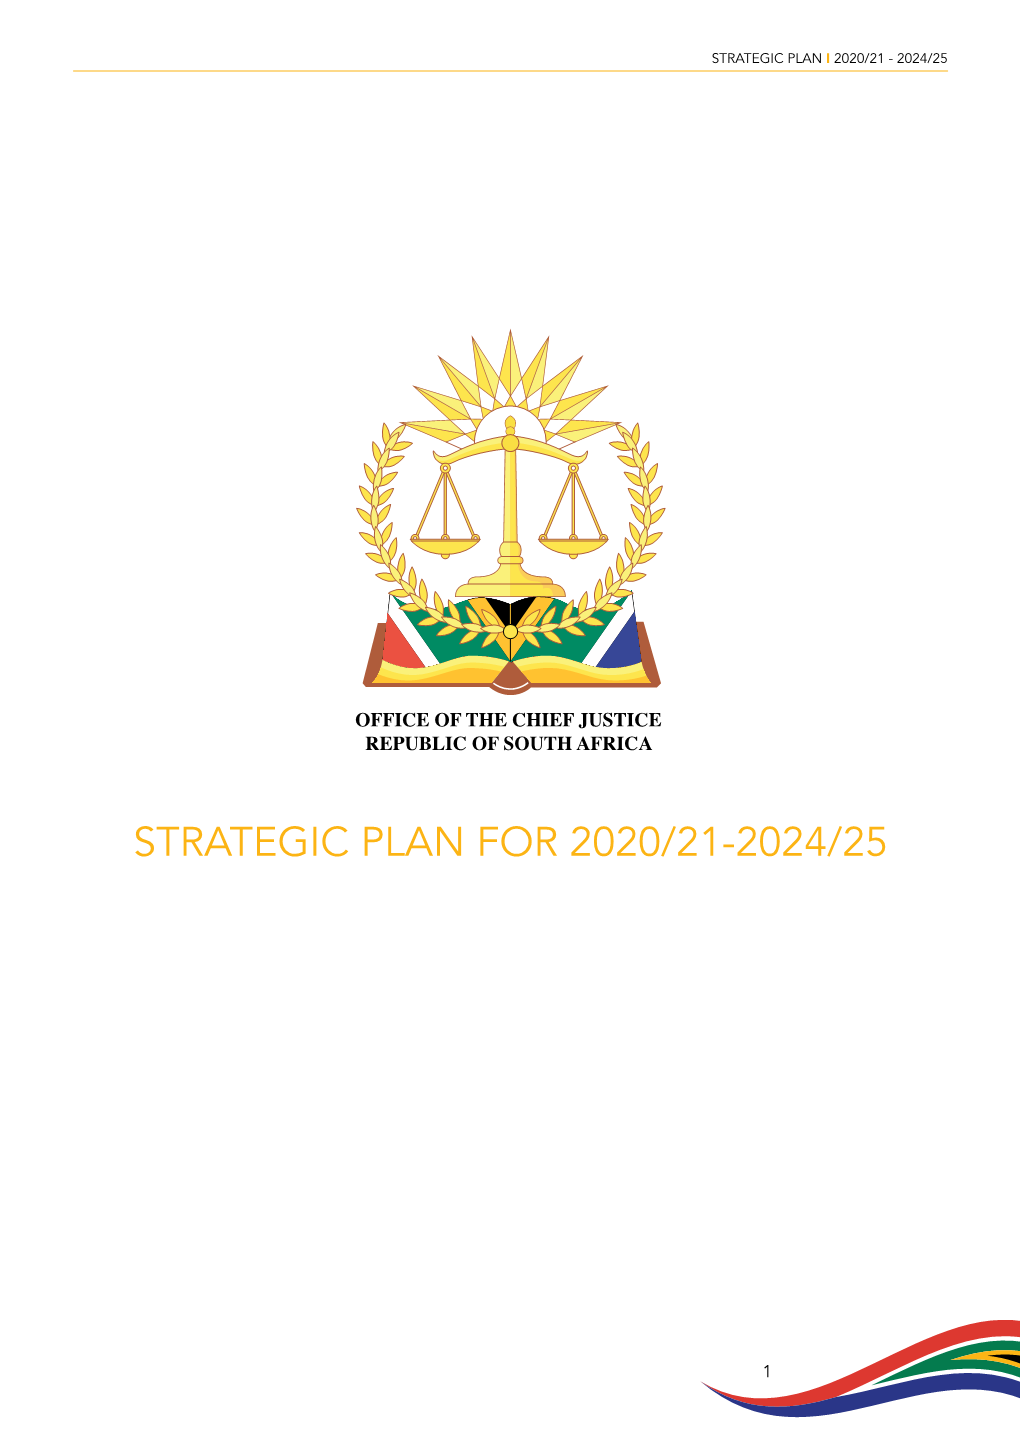 Strategic Plan I 2020/21 - 2024/25